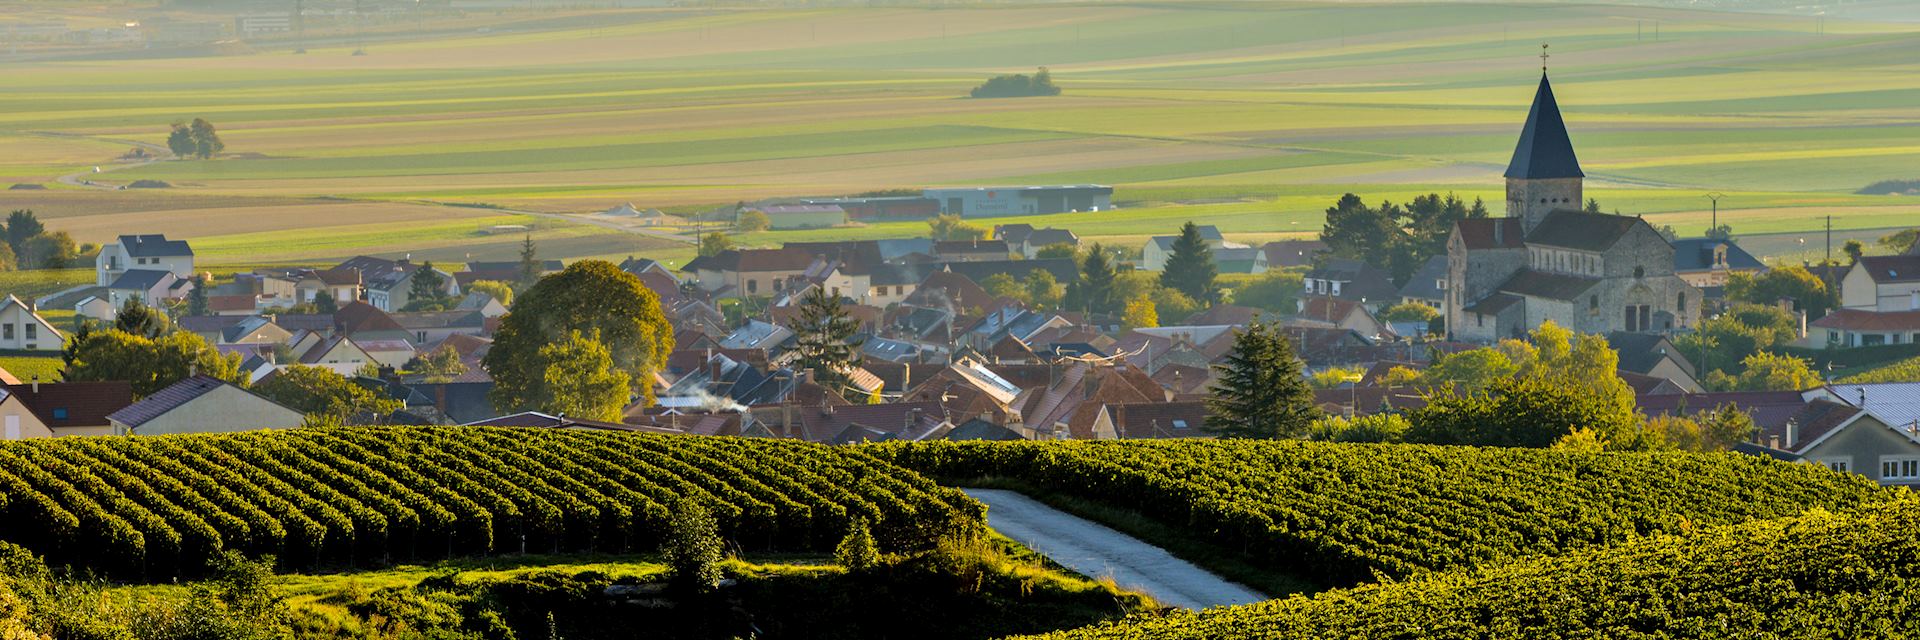 Vineyard, Champagne region 